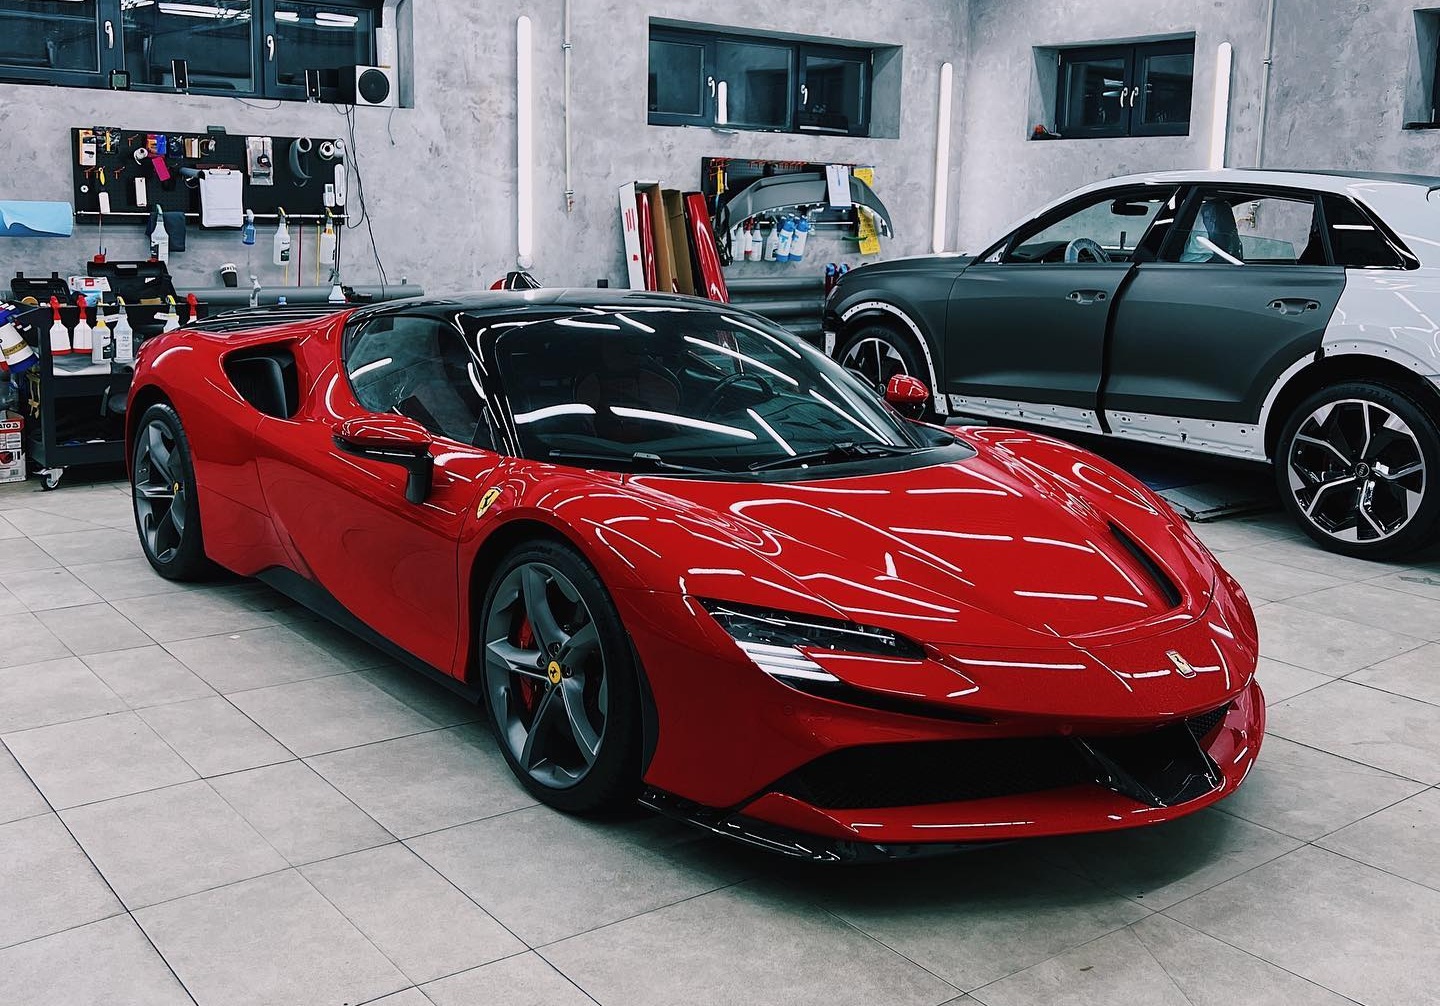 Украинский айтишник Слобоженко купил себе суперкар Ferrari за 1 млн долларов